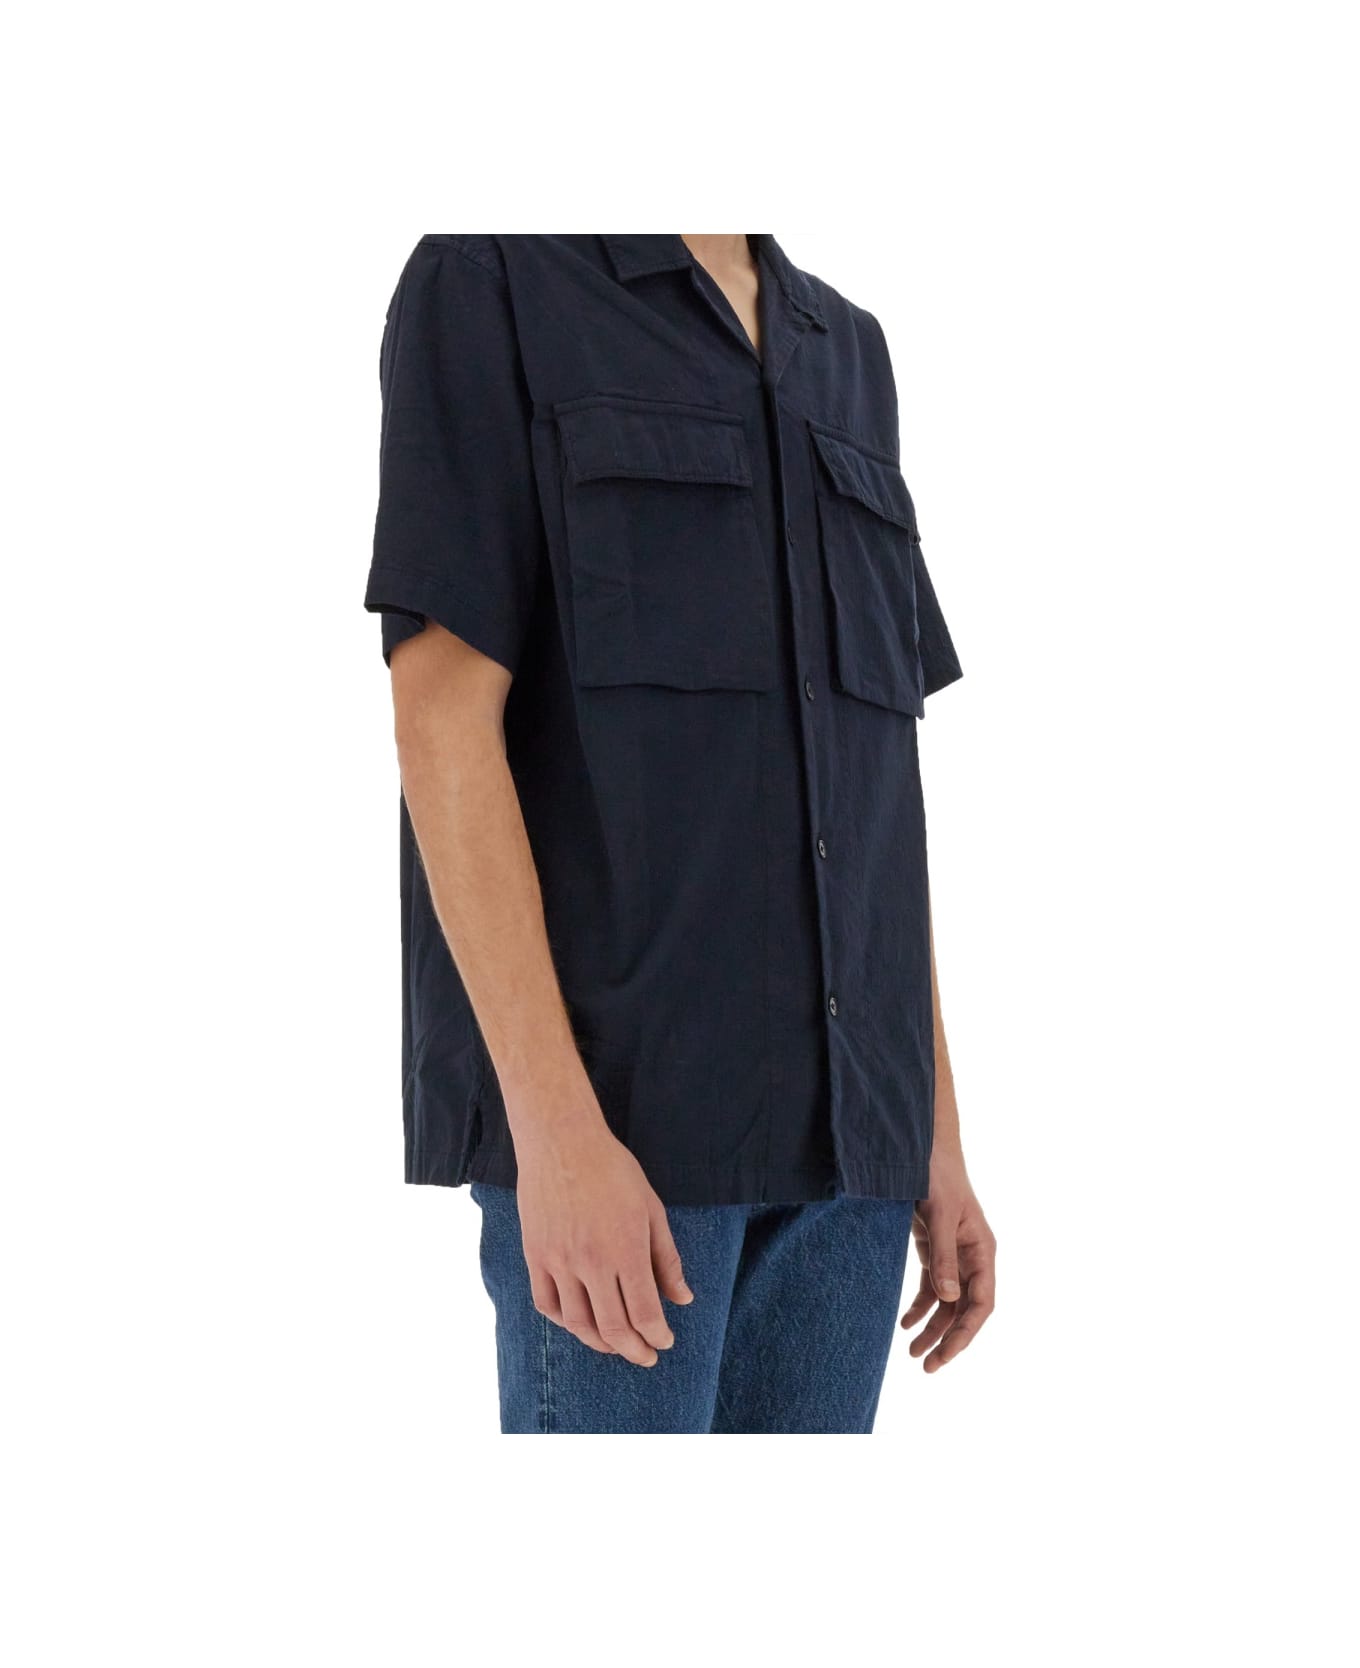 Belstaff Shirt With Pockets - BLUE シャツ